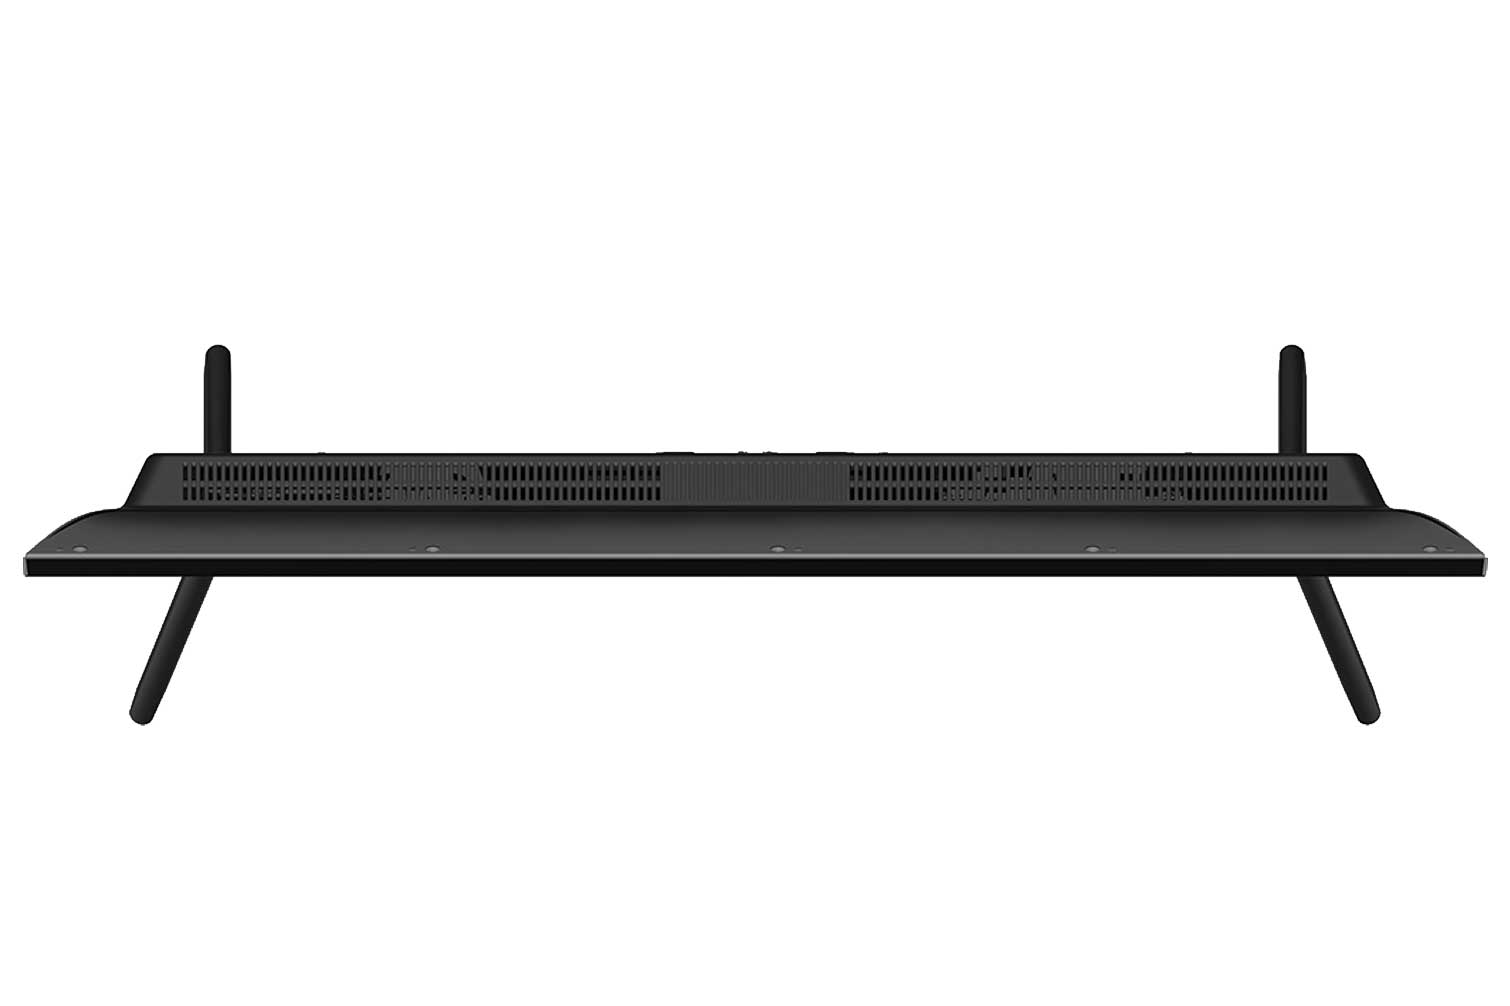 Smart Tivi Sharp 42 inch 2T-C42BG1X Android 9.0 - Hàng chính hãng